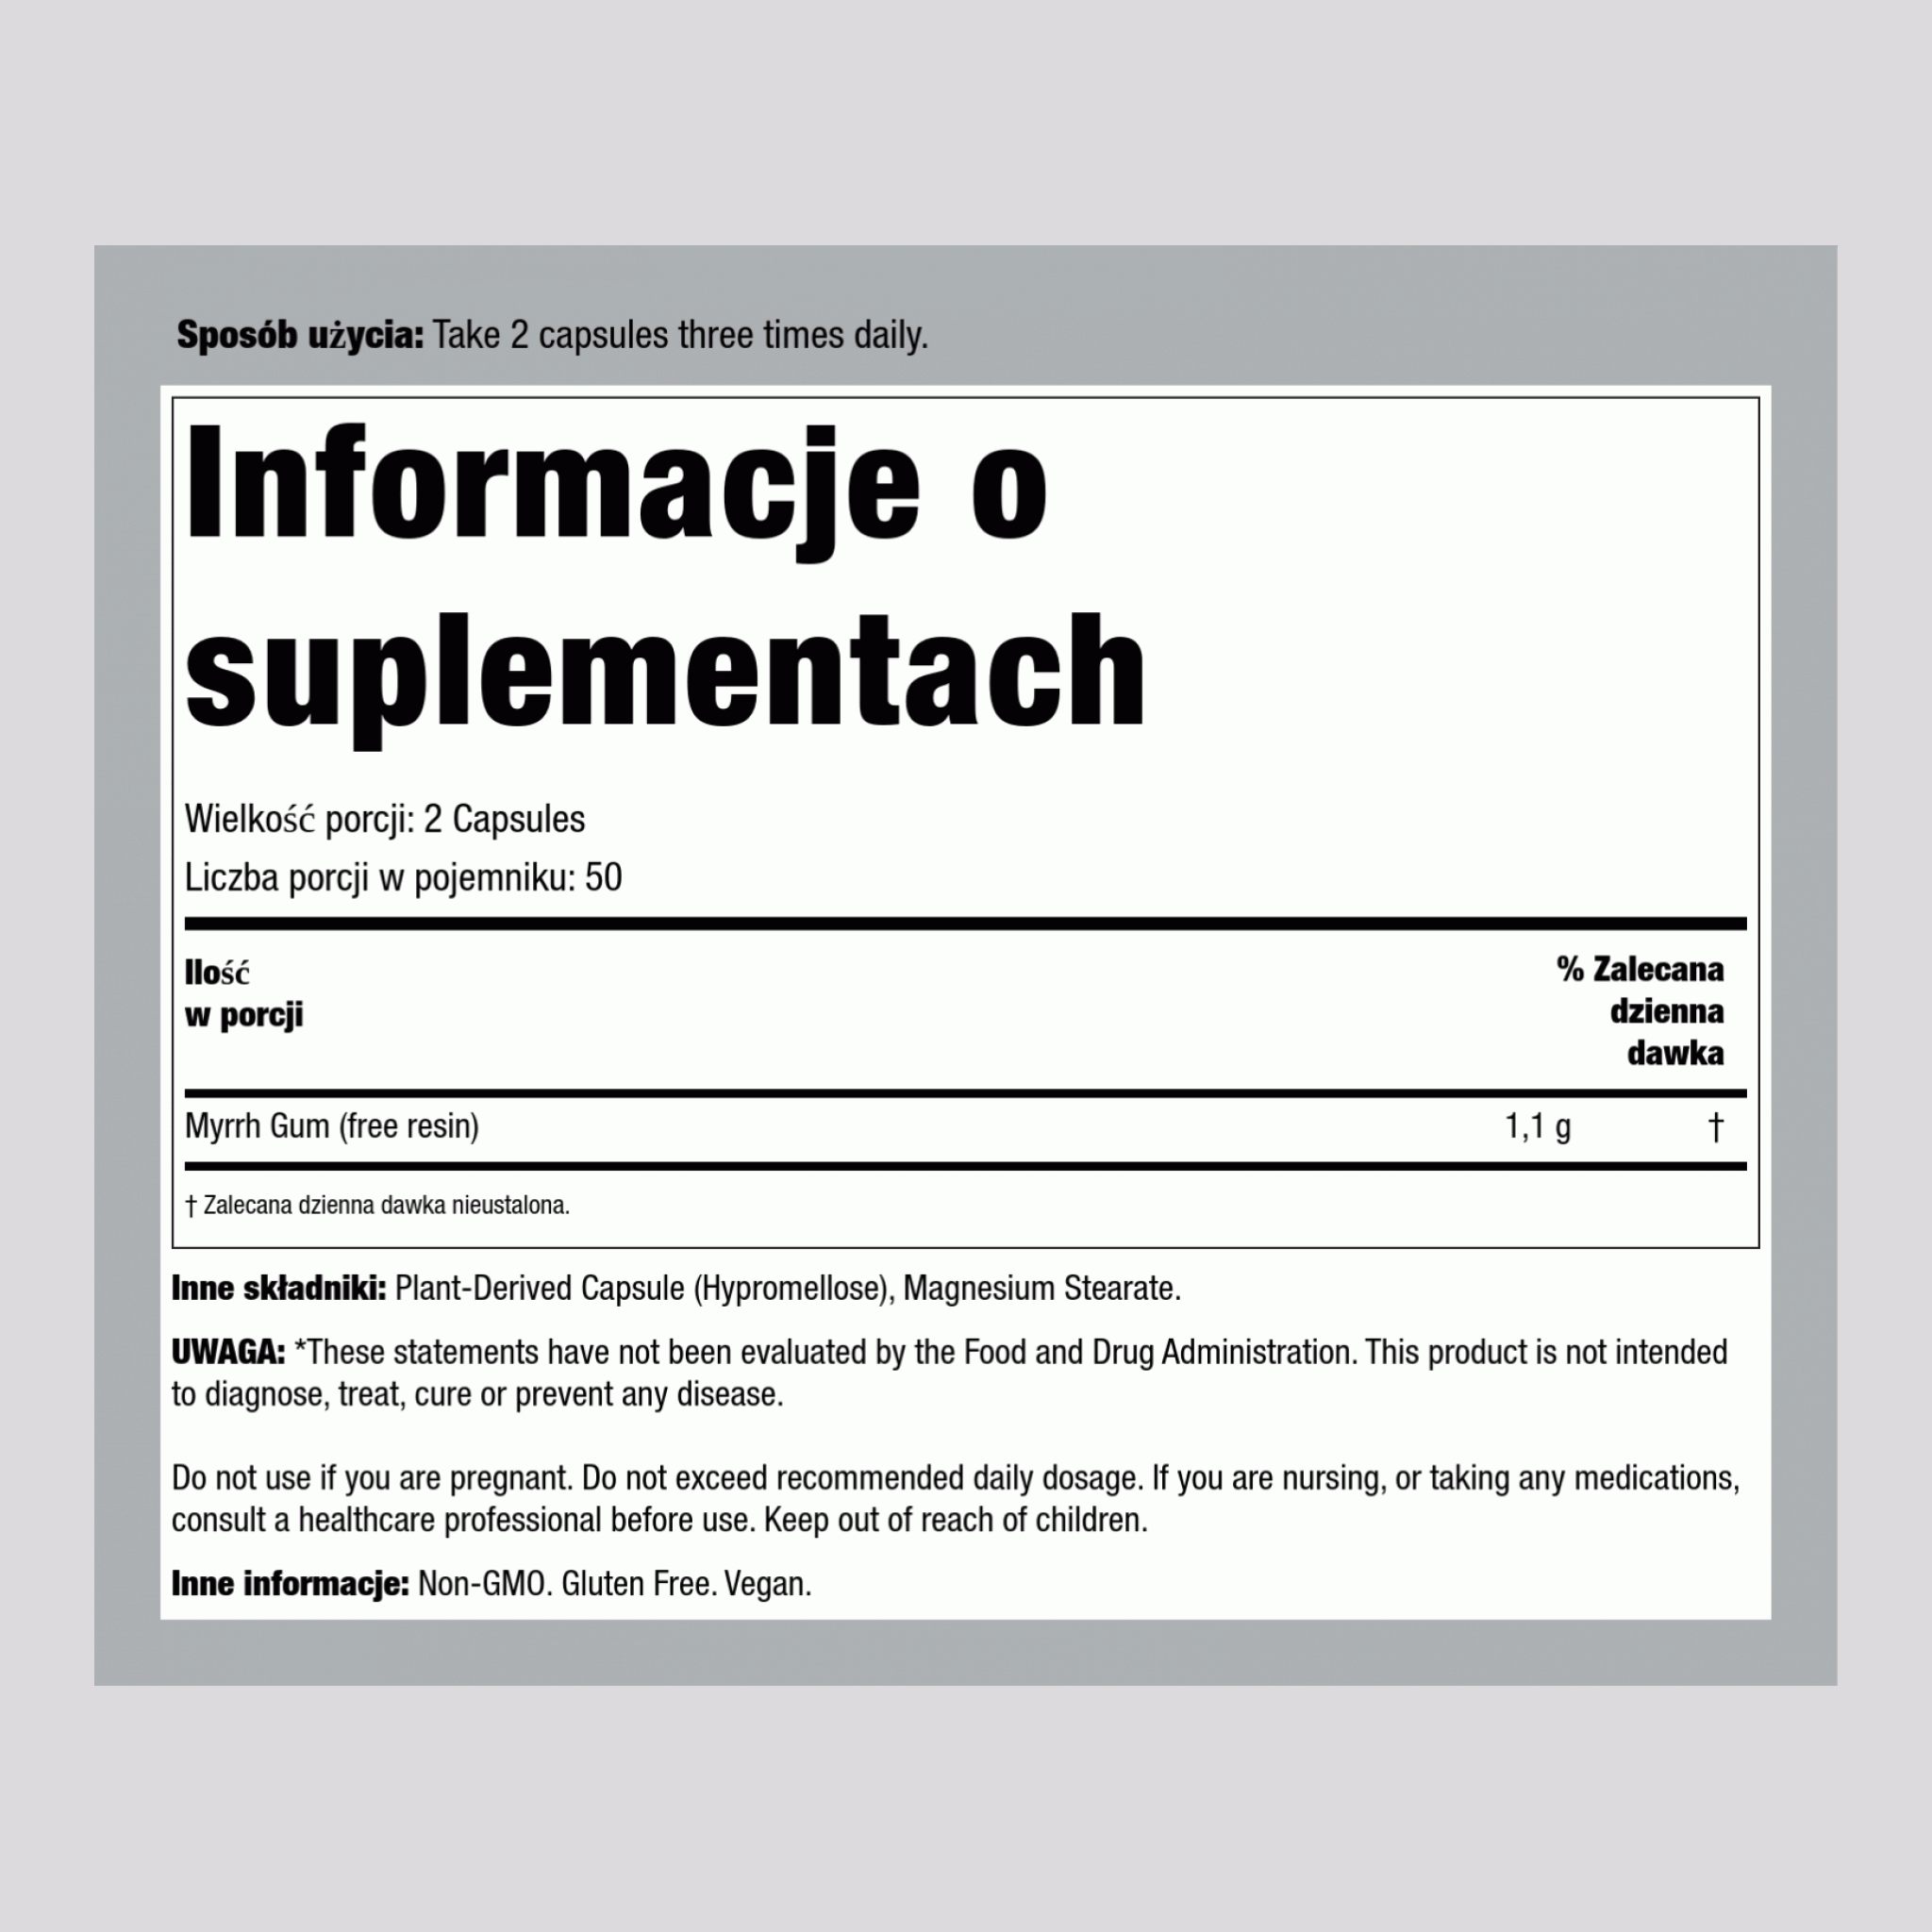 Guma Myrrh  1100 mg (na porcję) 100 Kapsułki wegetariańskie     